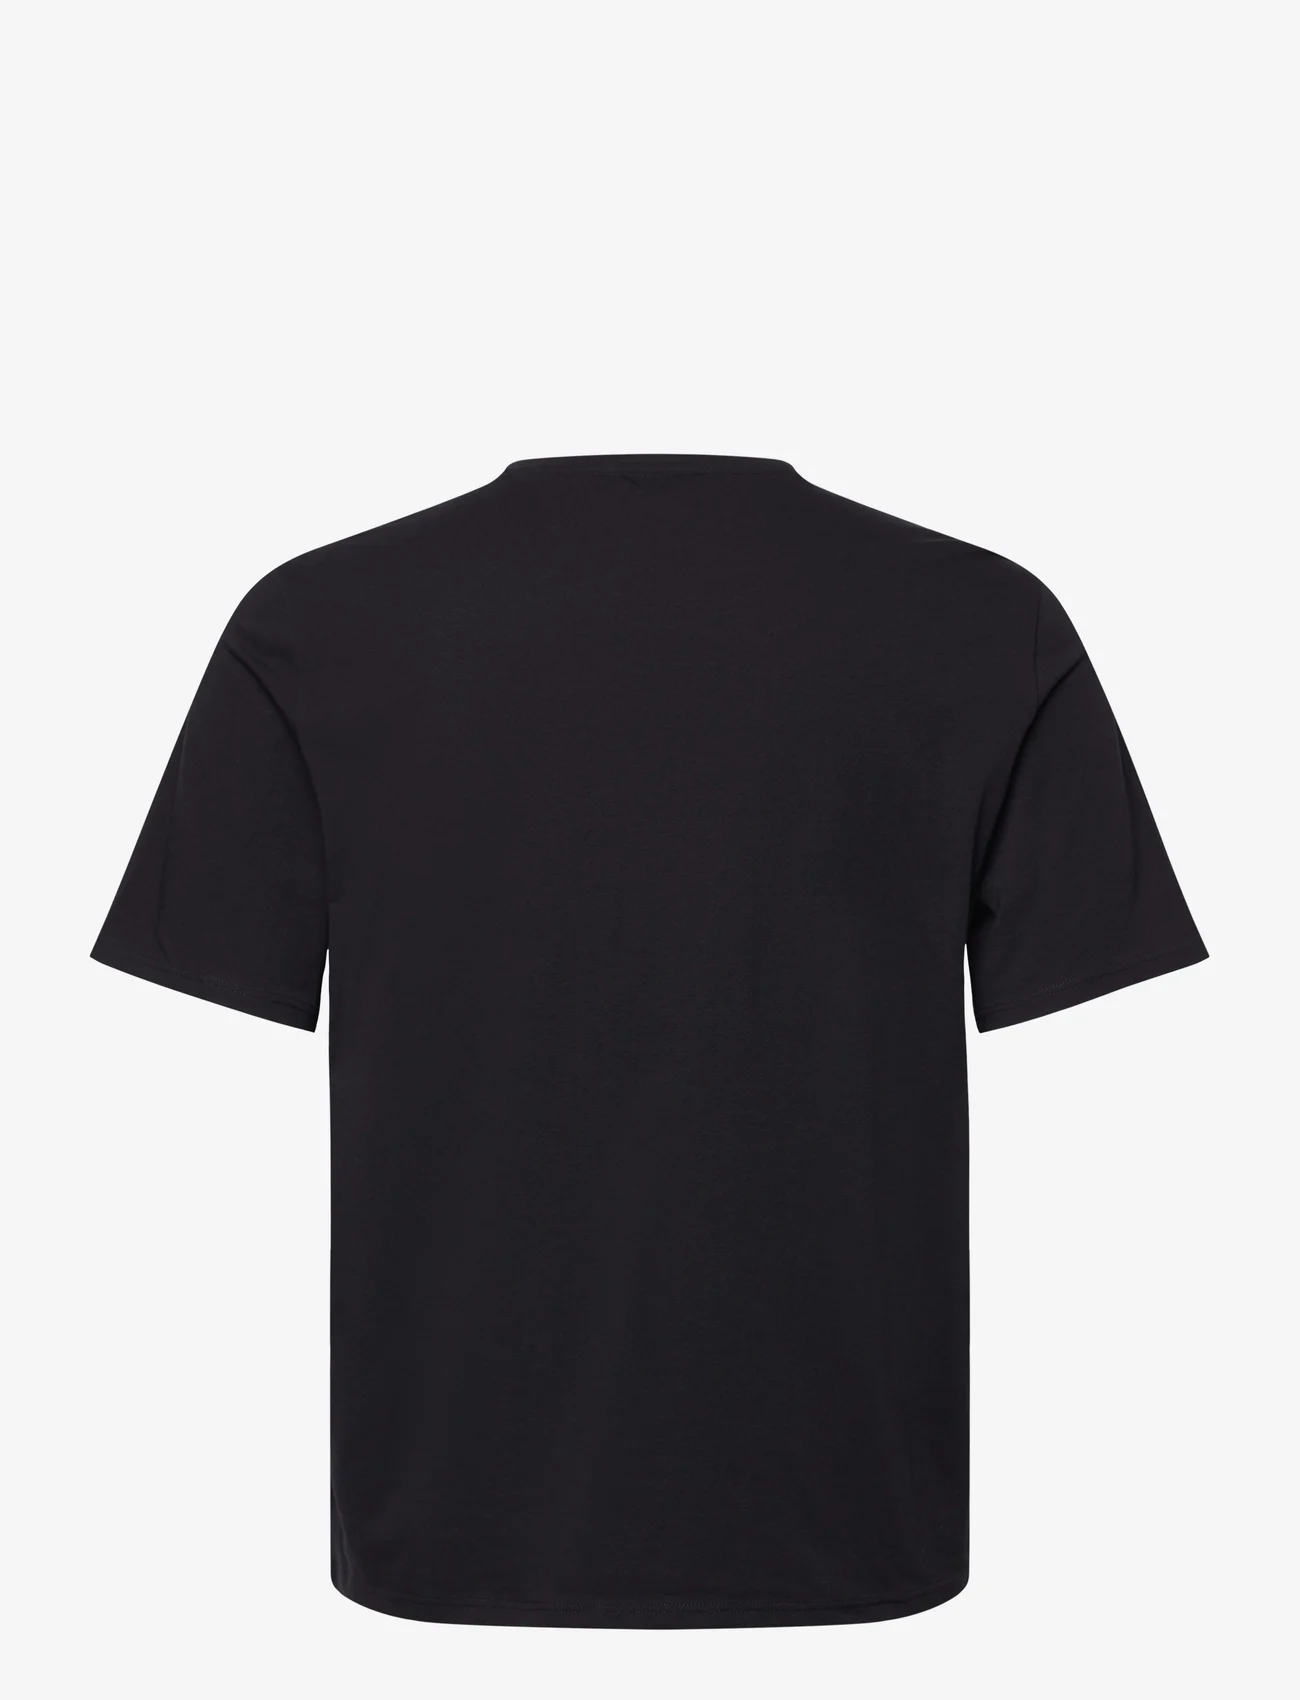 BOSS - Unique T-Shirt - laagste prijzen - black - 1